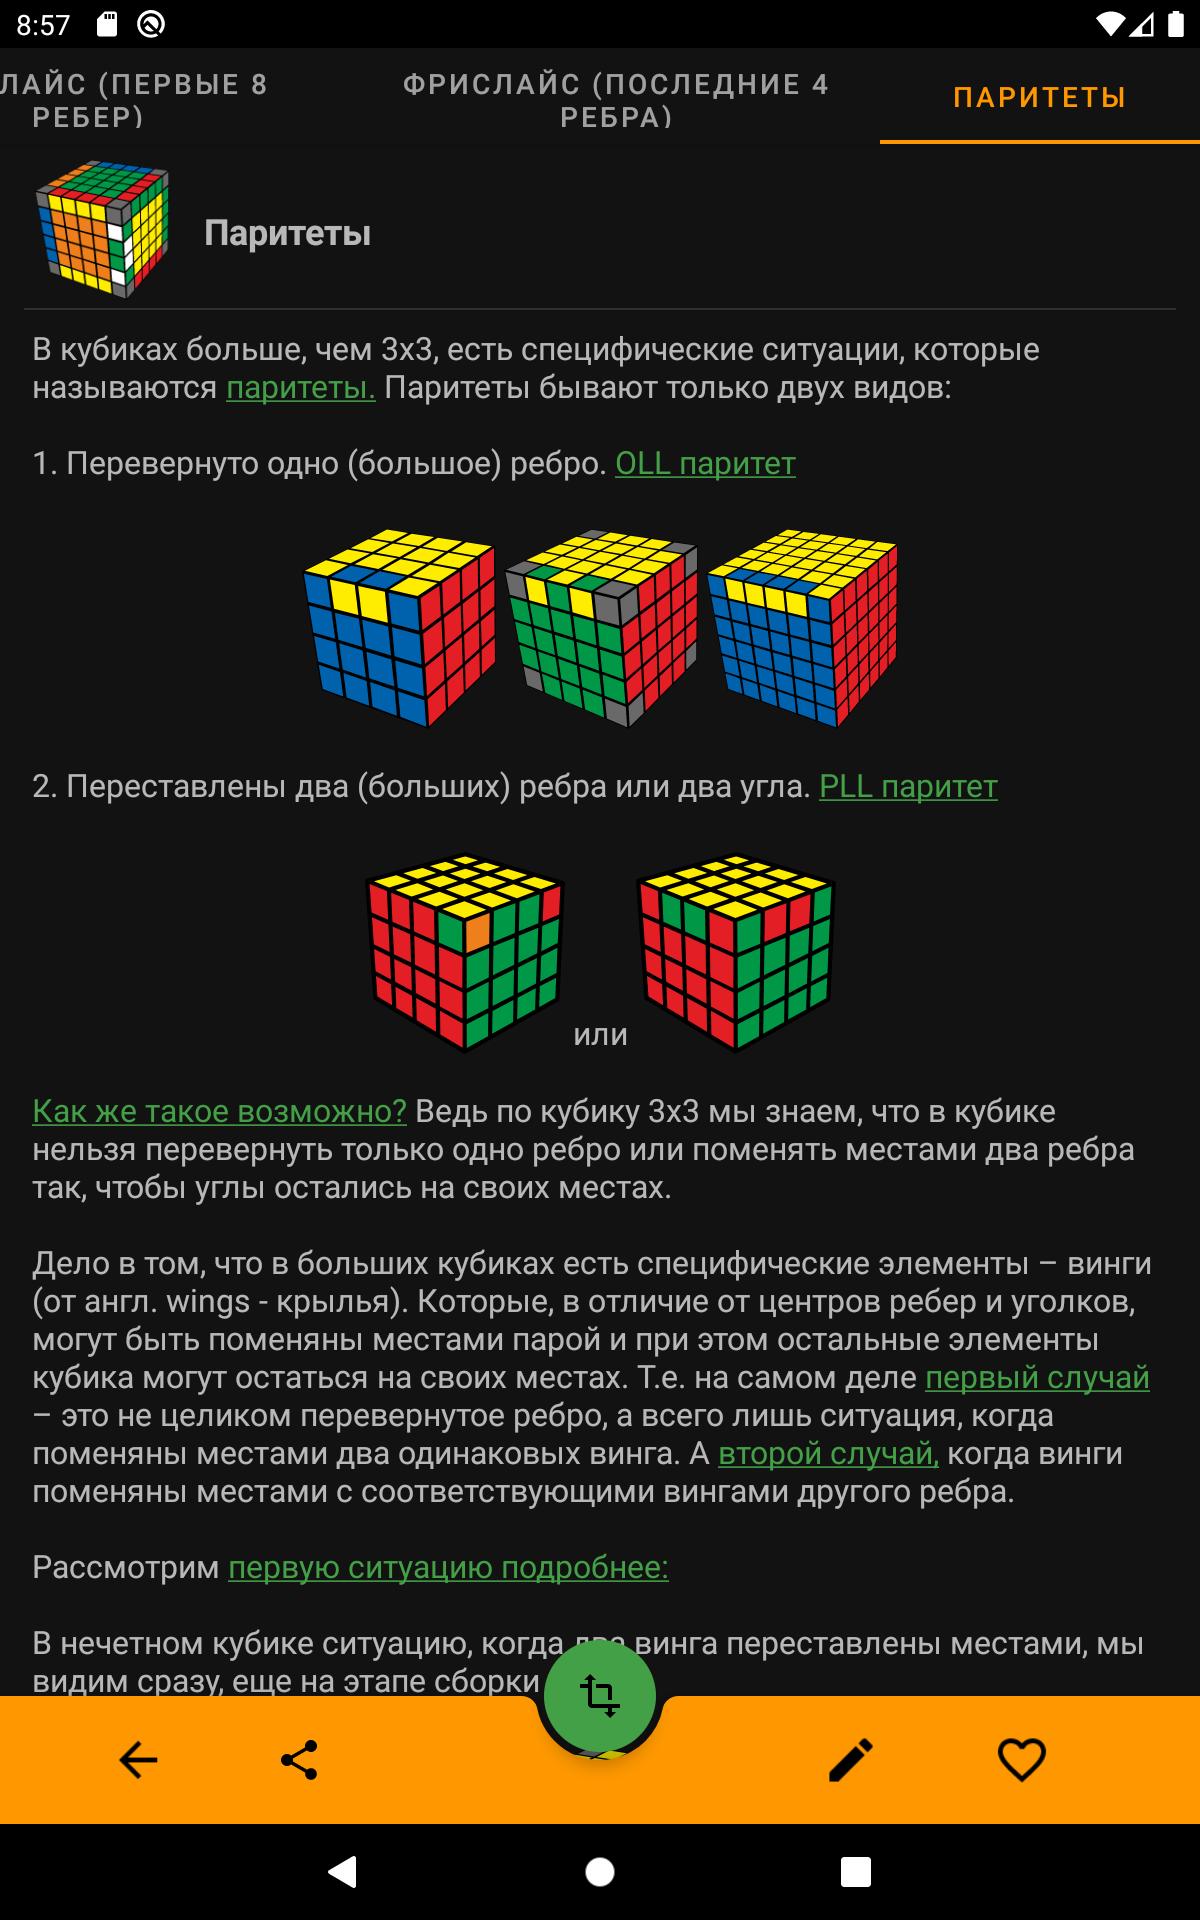 Приложение которое помогает собрать кубик рубик. Формула кубика Рубика. Схема по сборке кубика Рубика. Приложение кубик рубик. Приложение для сборки кубика Рубика.